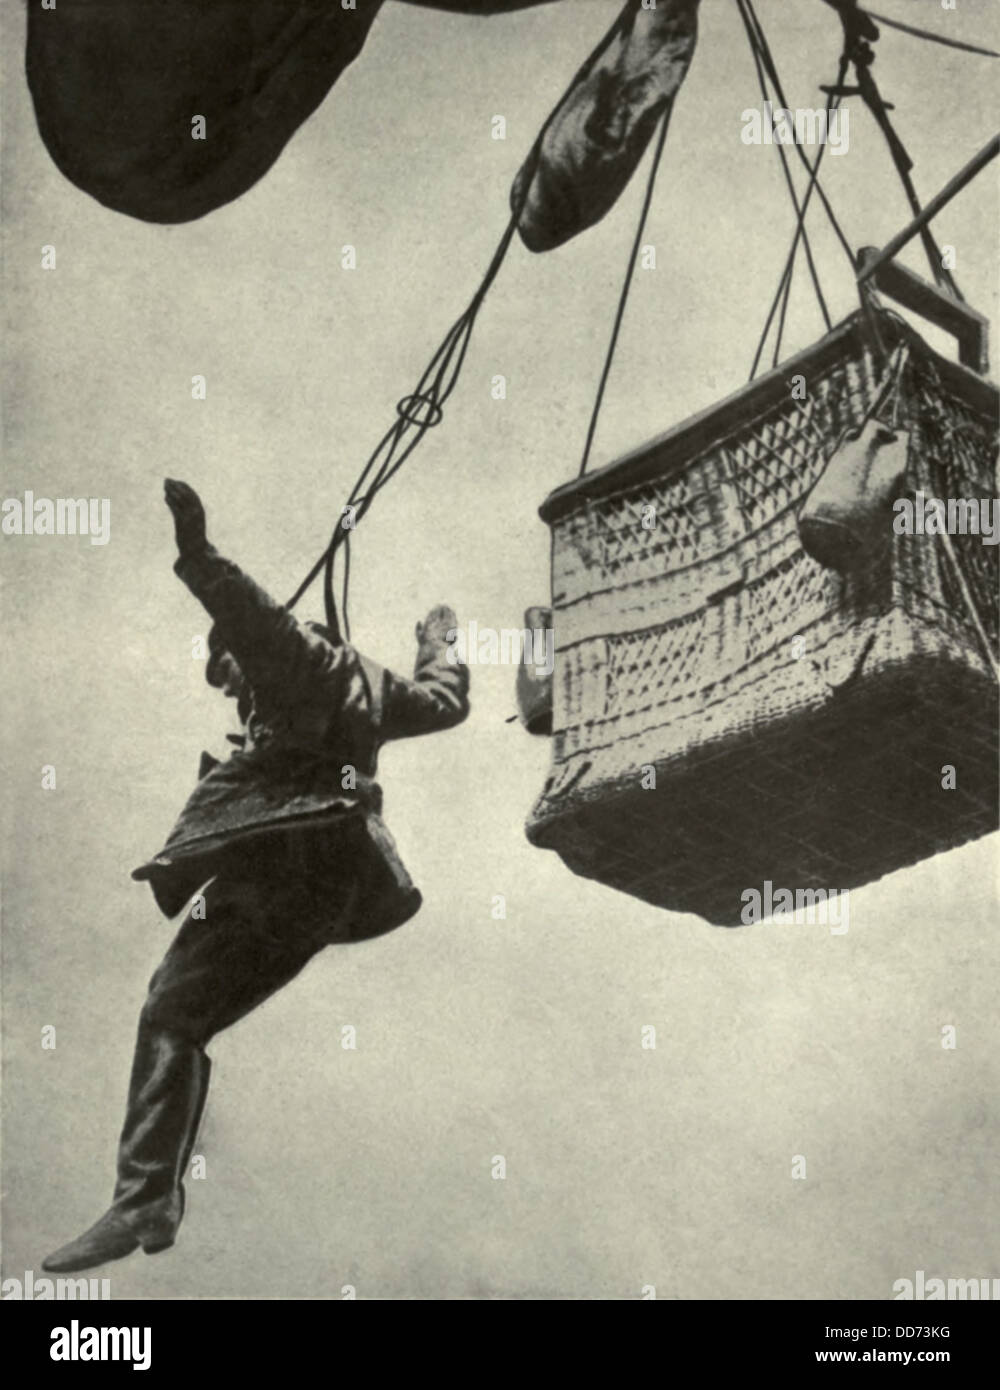 Deutsch WW1 Beobachter aus brennenden Ballon spannte an einem Fallschirm springen. 1916-18. der Fallschirm wurde in des Warenkorb gelegt Stockfoto